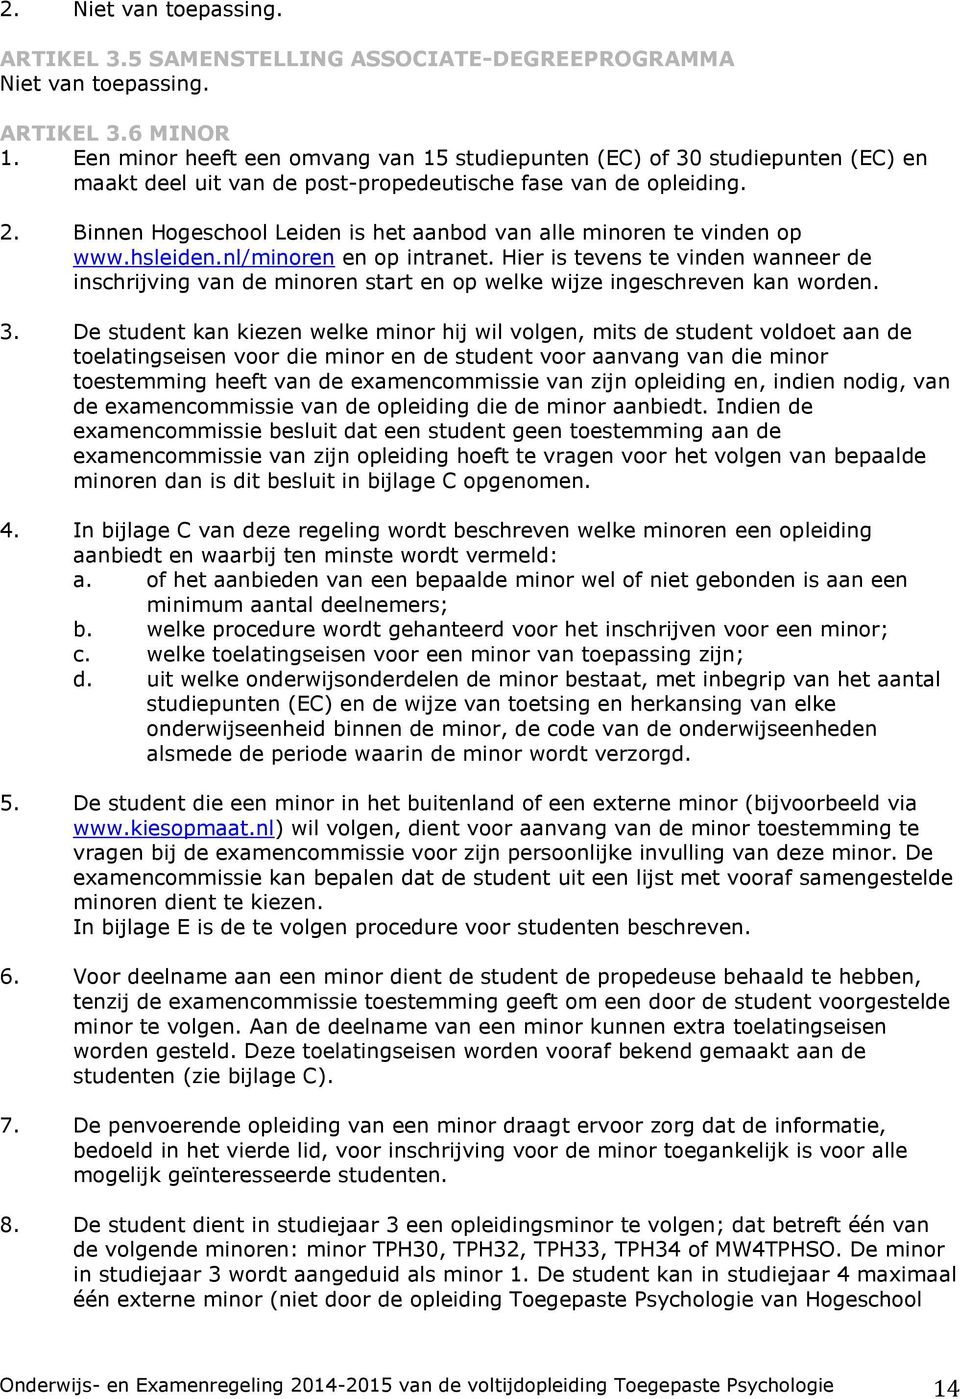 Binnen Hogeschool Leiden is het aanbod van alle minoren te vinden op www.hsleiden.nl/minoren en op intranet.